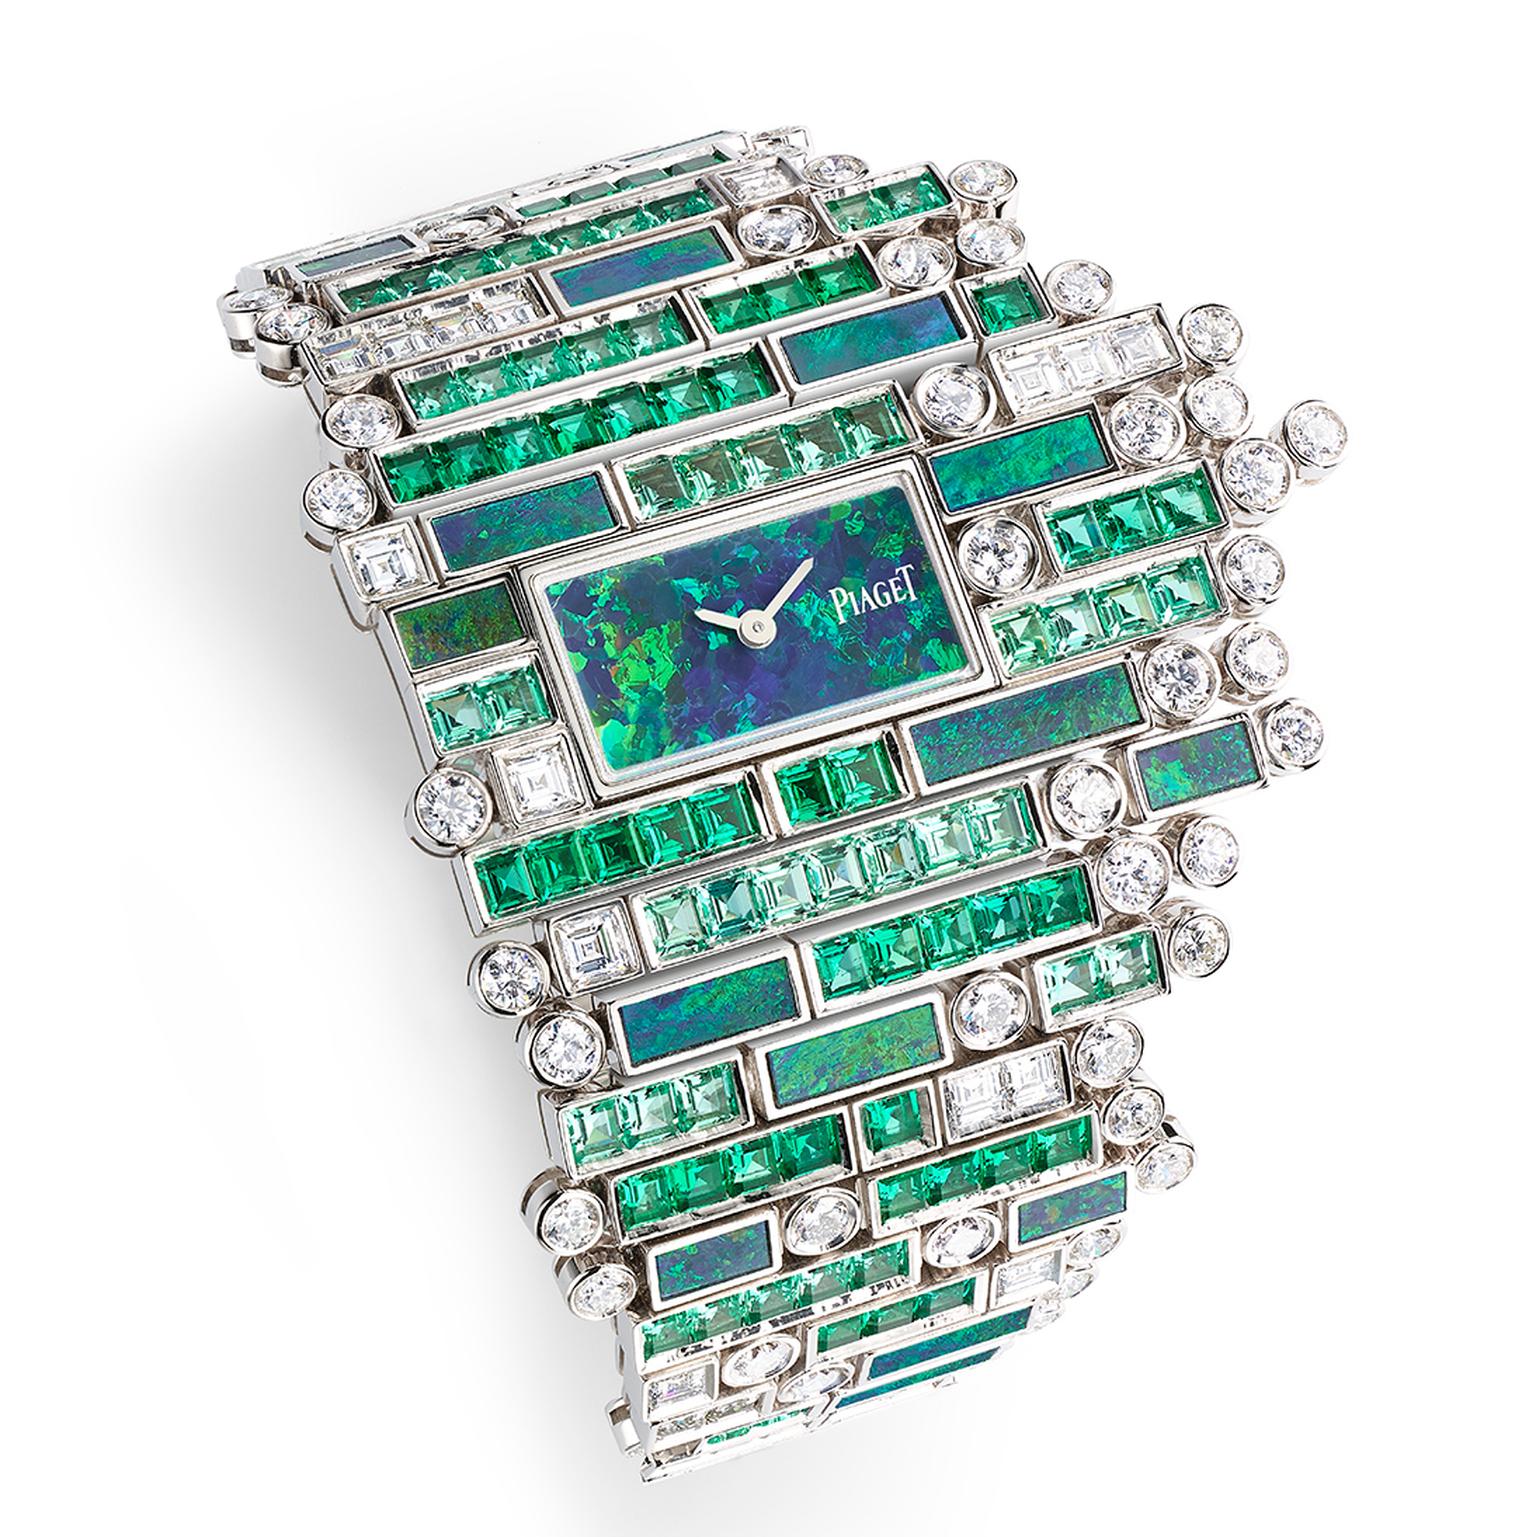 Piaget Verde Bisazza jewellery watch